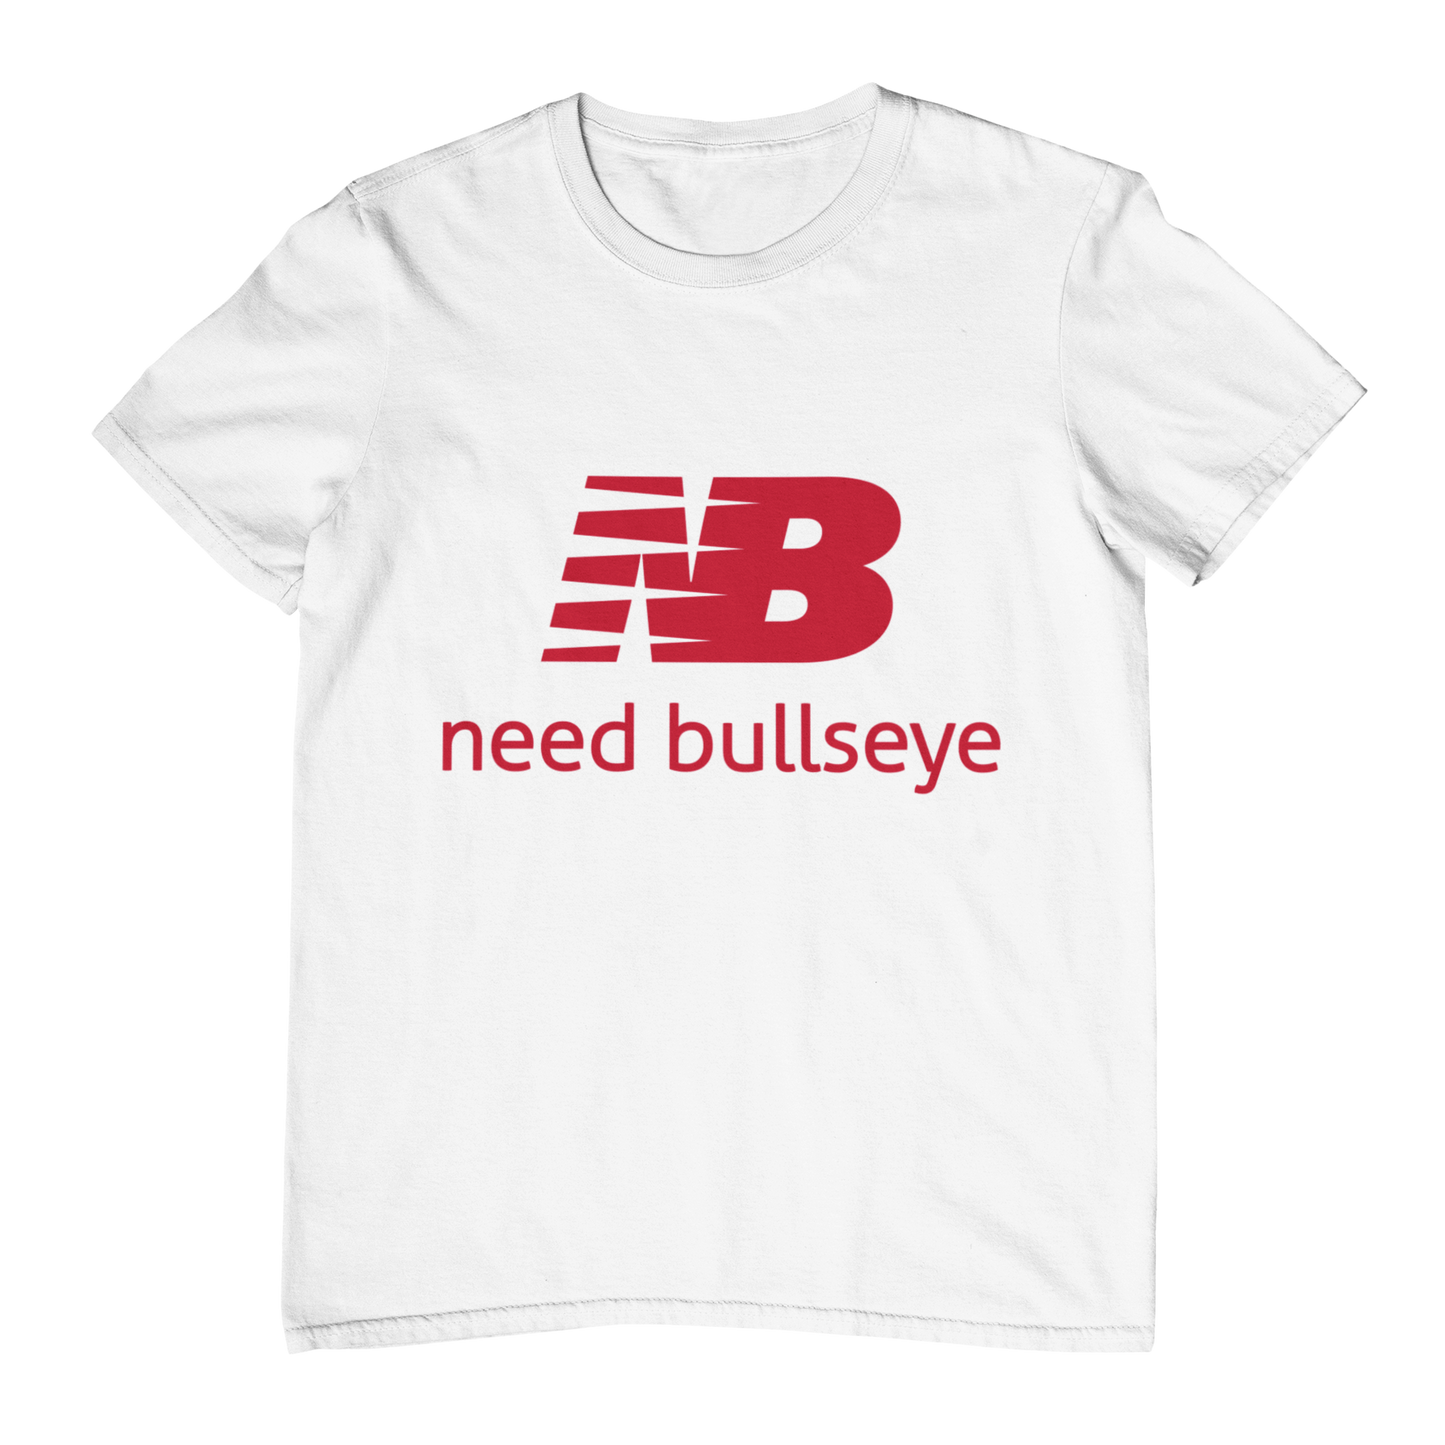 Need bullseye - Shirt